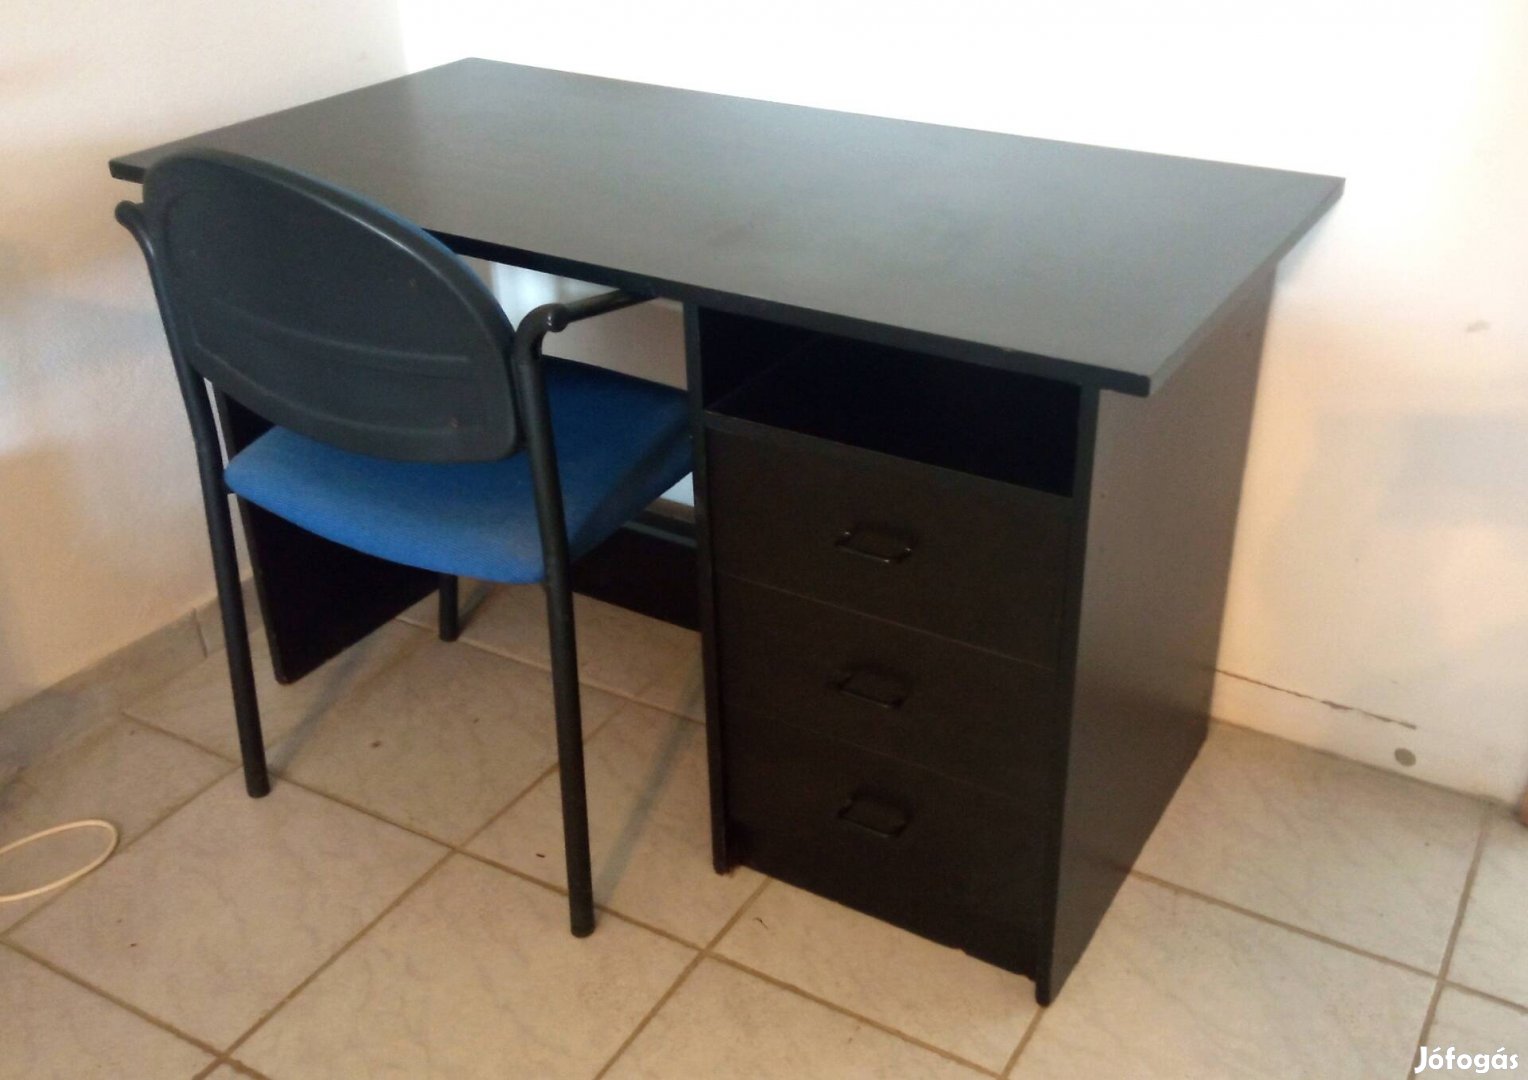 Költözés miatt jó állapotú, erős, fekete színű íróasztal, 120x60x73